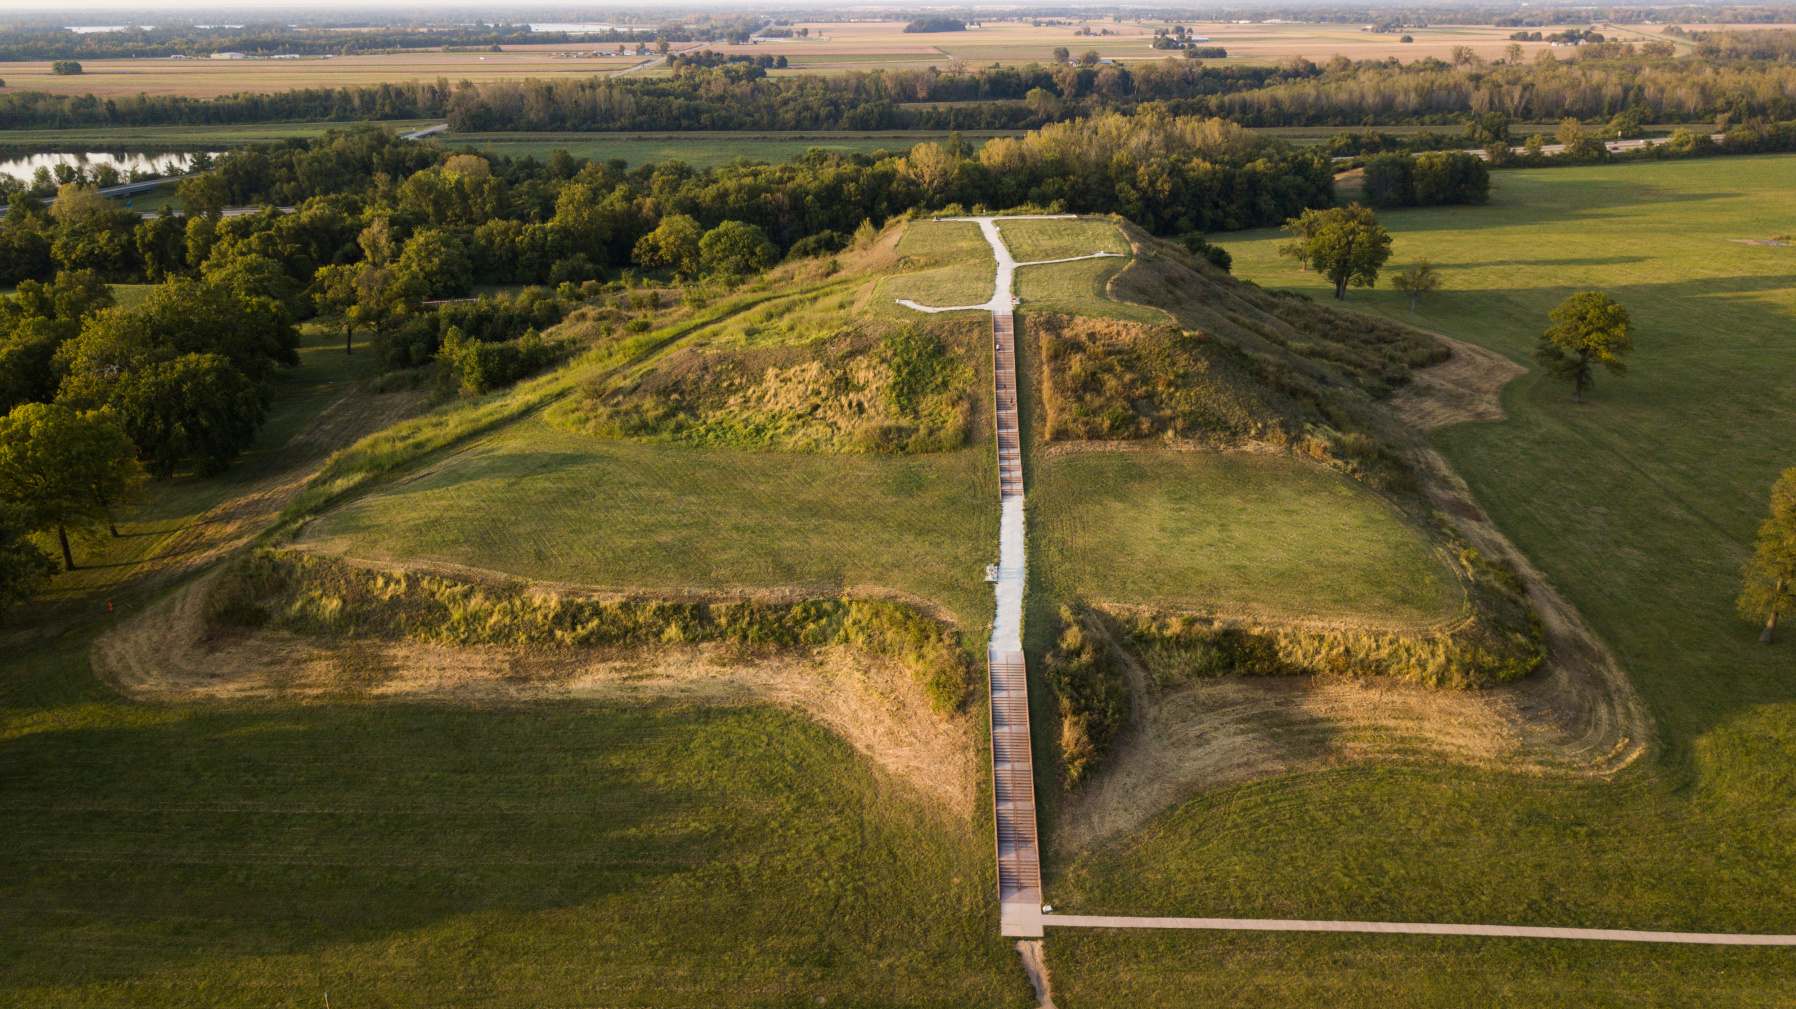 Monks Mound, ສ້າງຂຶ້ນລະຫວ່າງ 950 ແລະ 1100 CE ແລະຕັ້ງຢູ່ໃນ Cahokia Mounds UNESCO ມໍລະດົກໂລກໃກ້ກັບ Collinsville, Illinois, ເປັນບ່ອນກໍ່ສ້າງແຜ່ນດິນໂລກກ່ອນ Columbian ທີ່ໃຫຍ່ທີ່ສຸດໃນອາເມລິກາທາງເຫນືອຂອງ Mesoamerica. ວັດທະນະທໍາກ່ອນ Columbian ຈໍານວນຫນຶ່ງແມ່ນເອີ້ນວ່າ "ຜູ້ສ້າງພູ".